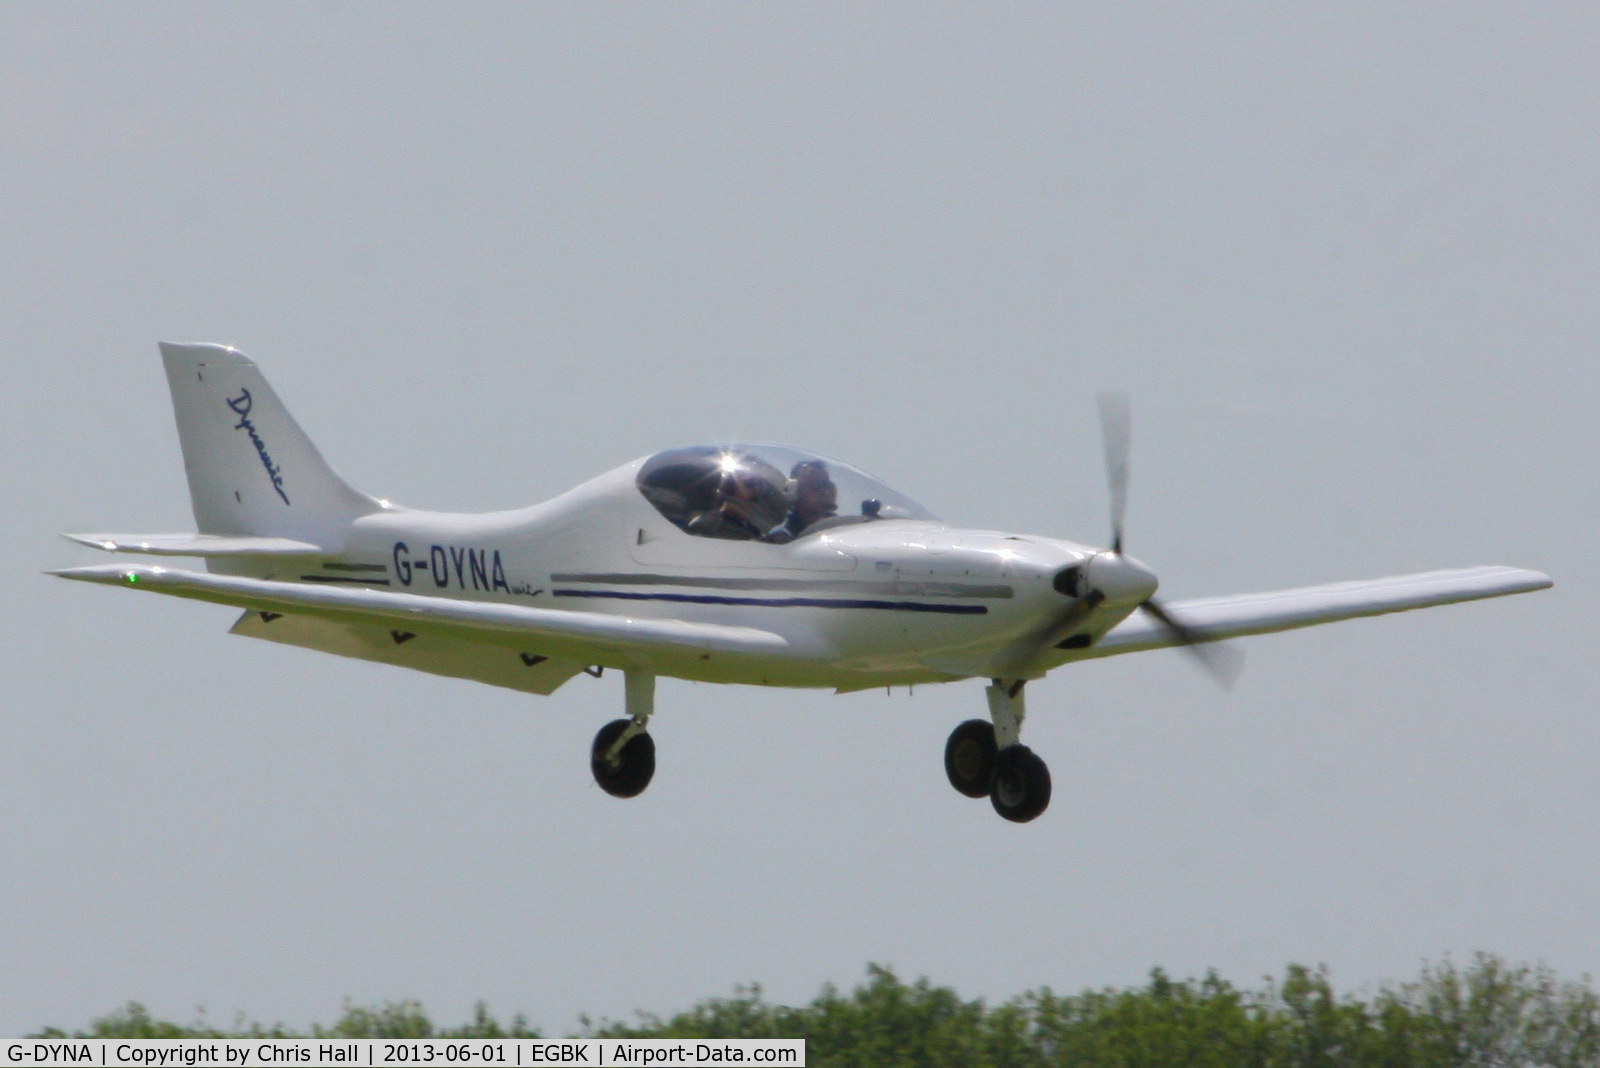 G-DYNA, 2006 Aerospool WT-9 Dynamic C/N DY135/2006, at AeroExpo 2013